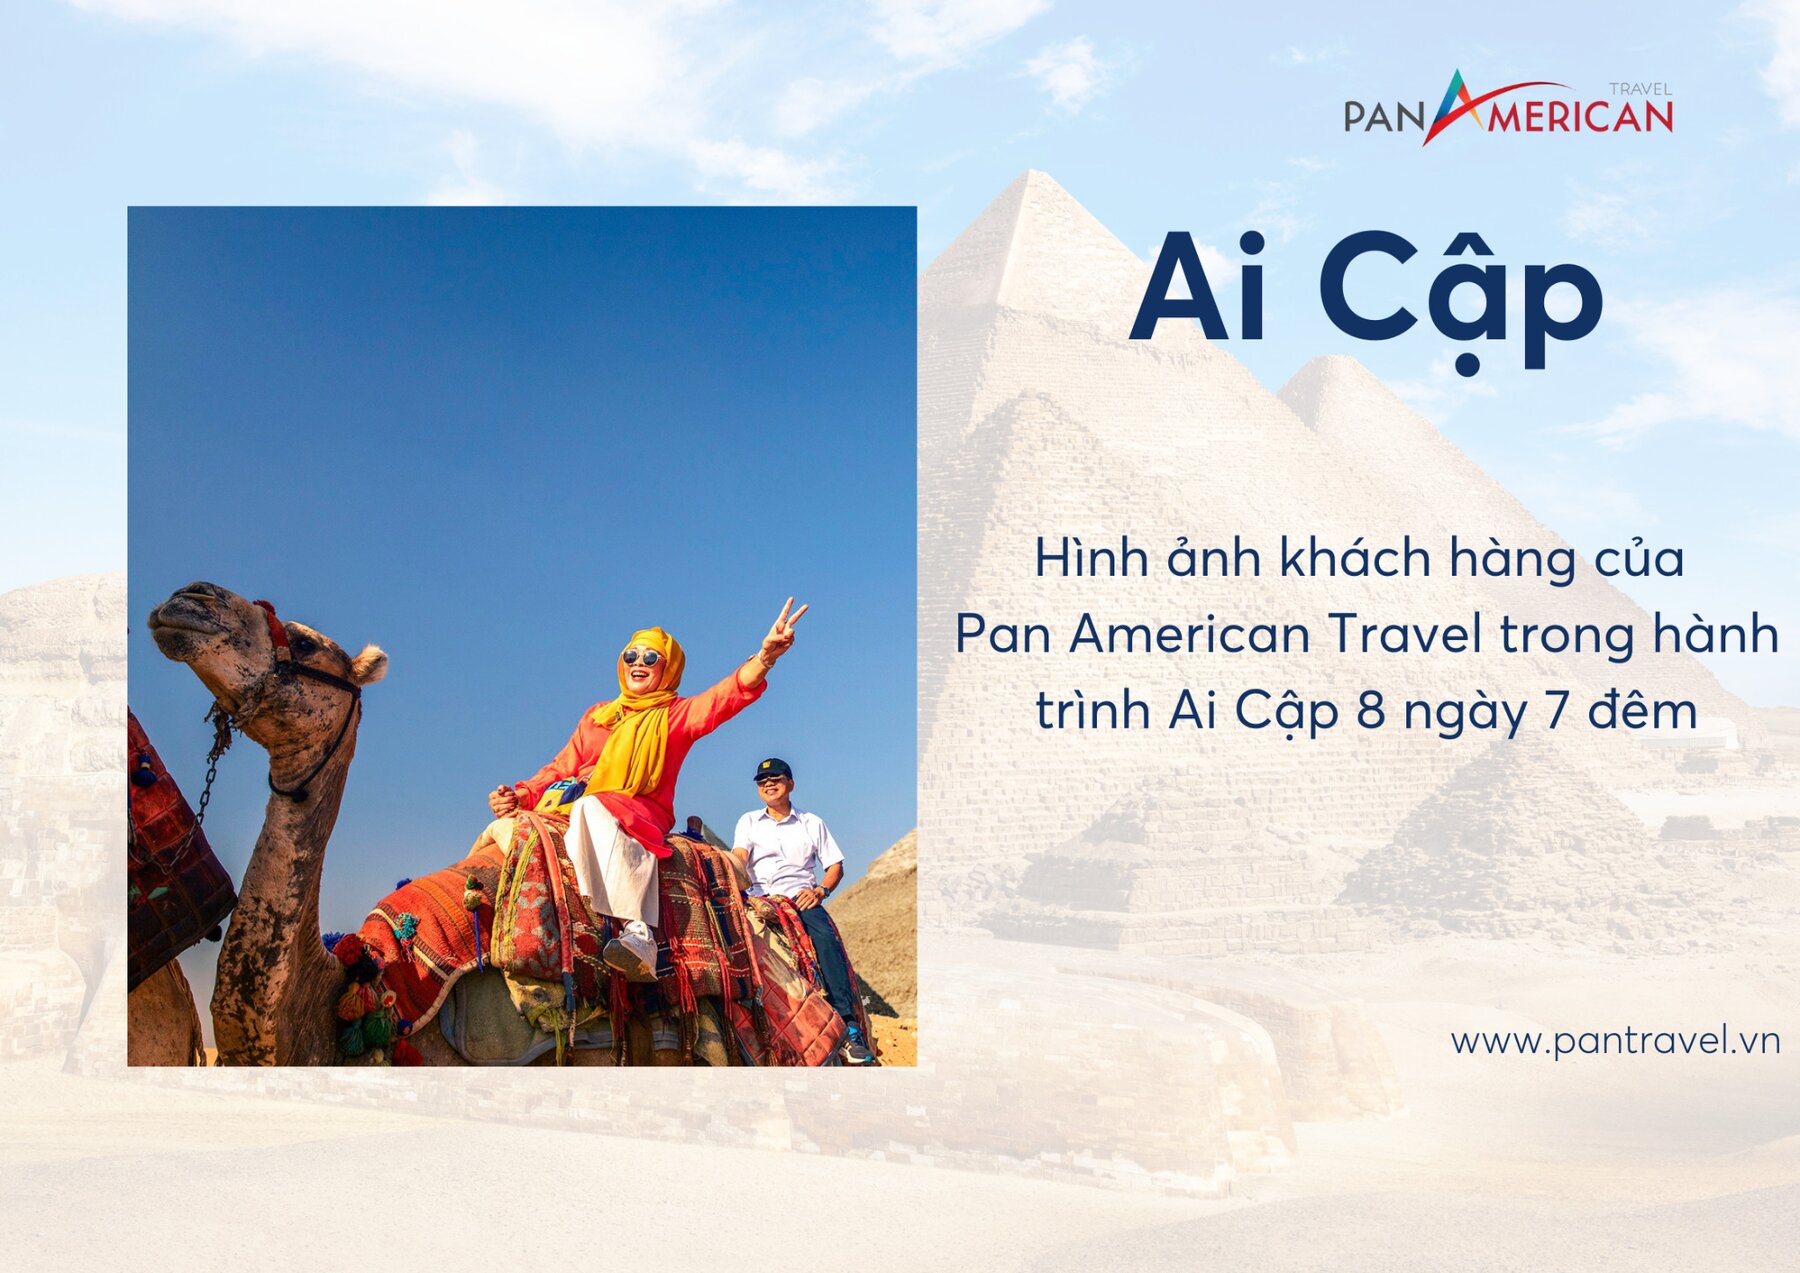 Hình ảnh khách hàng của Pan American Travel trong tour du lịch châu Phi - Hành trình khám phá Ai Cập cổ đại 8 ngày 7 đêm.